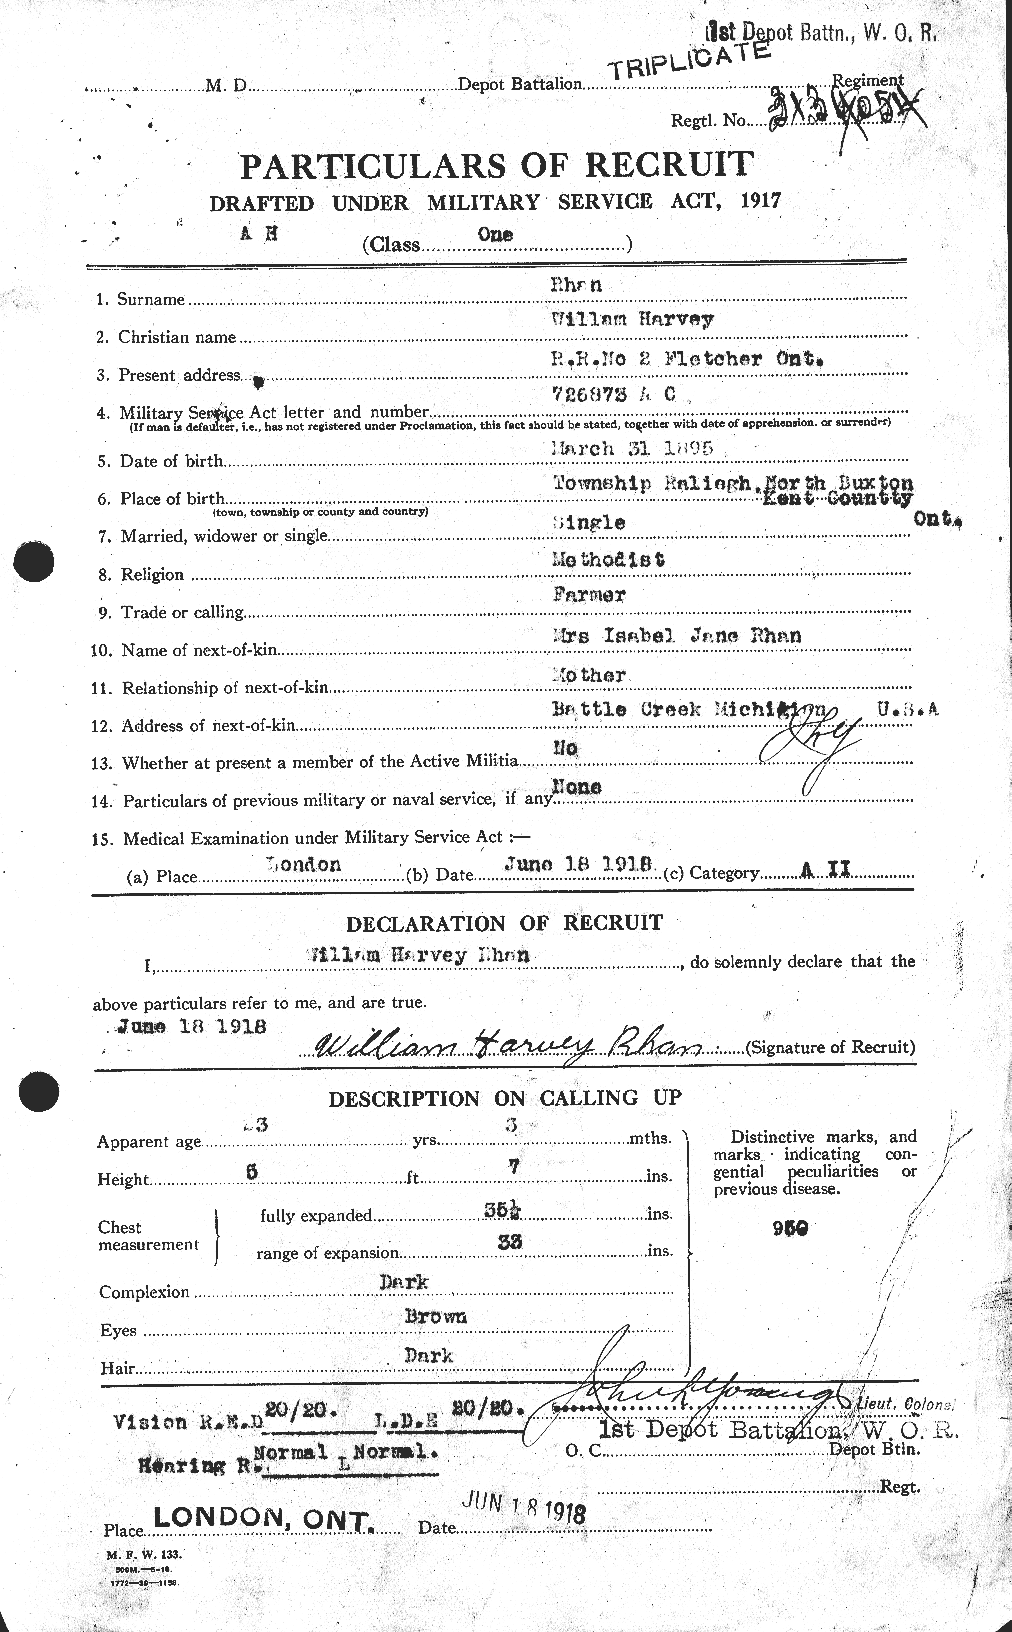 Dossiers du Personnel de la Première Guerre mondiale - CEC 600800a